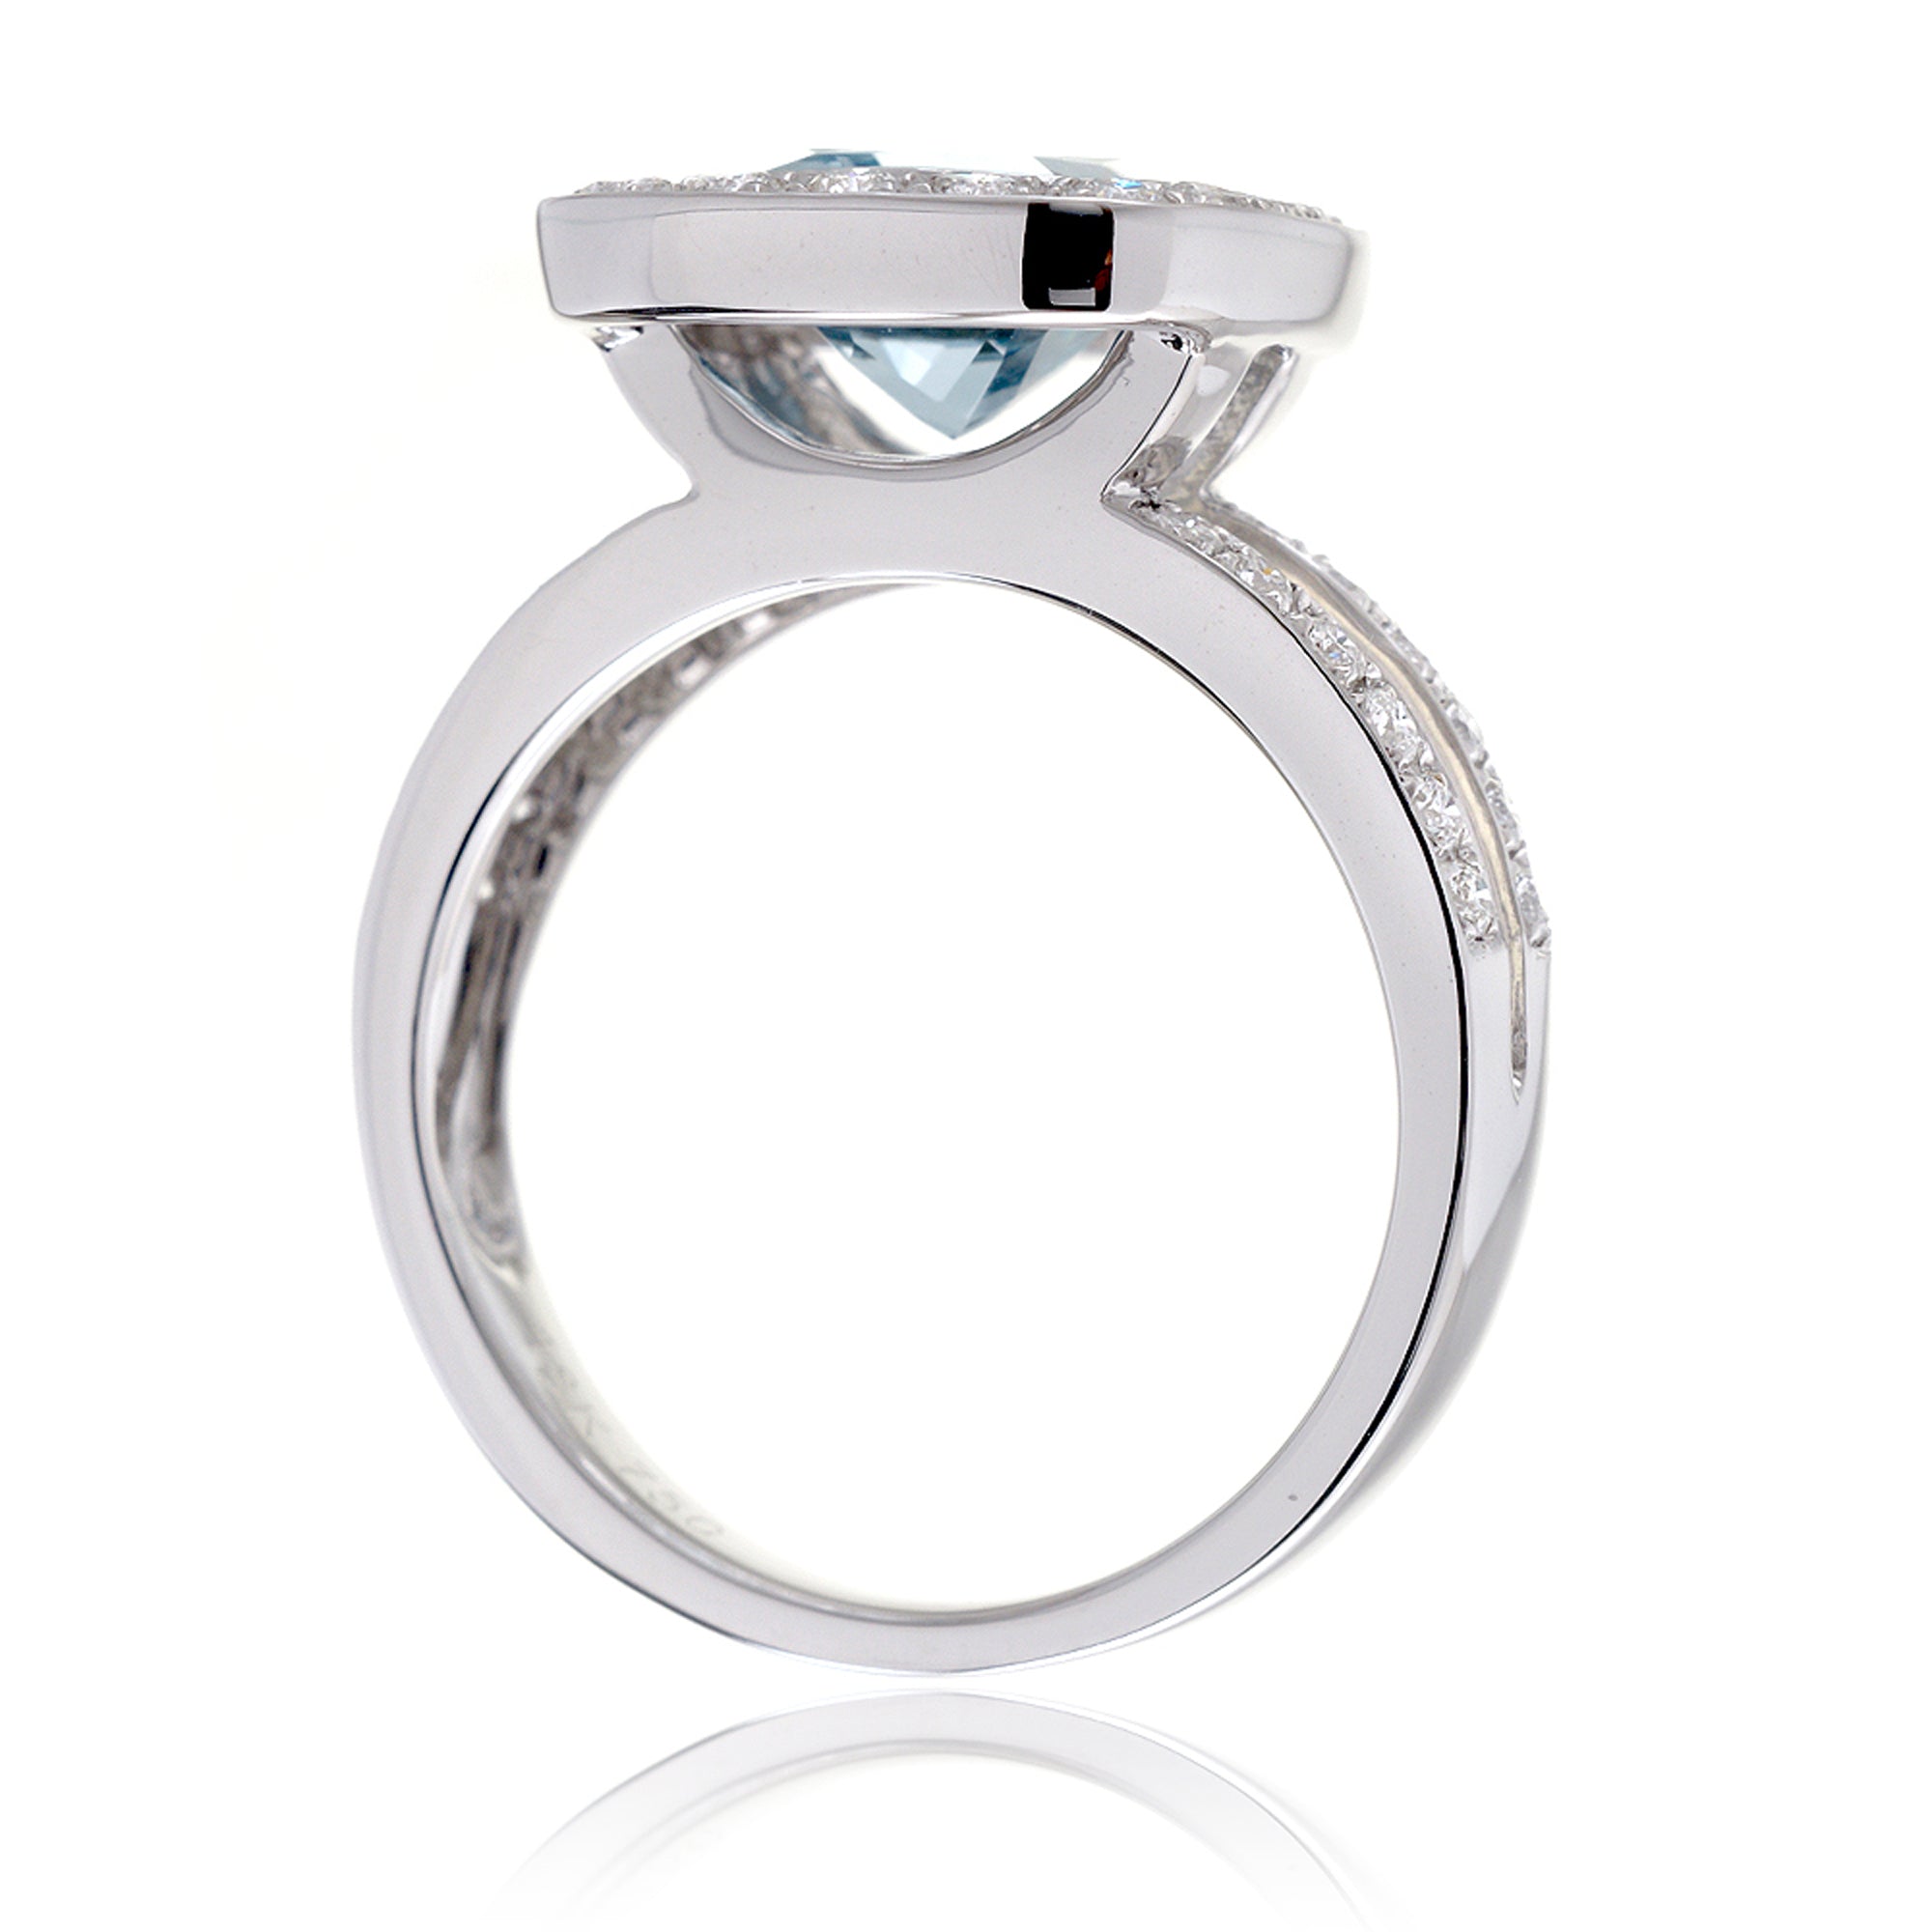 Cushion aquamarine bezel set diamond halo split band ring white gold - the Effie